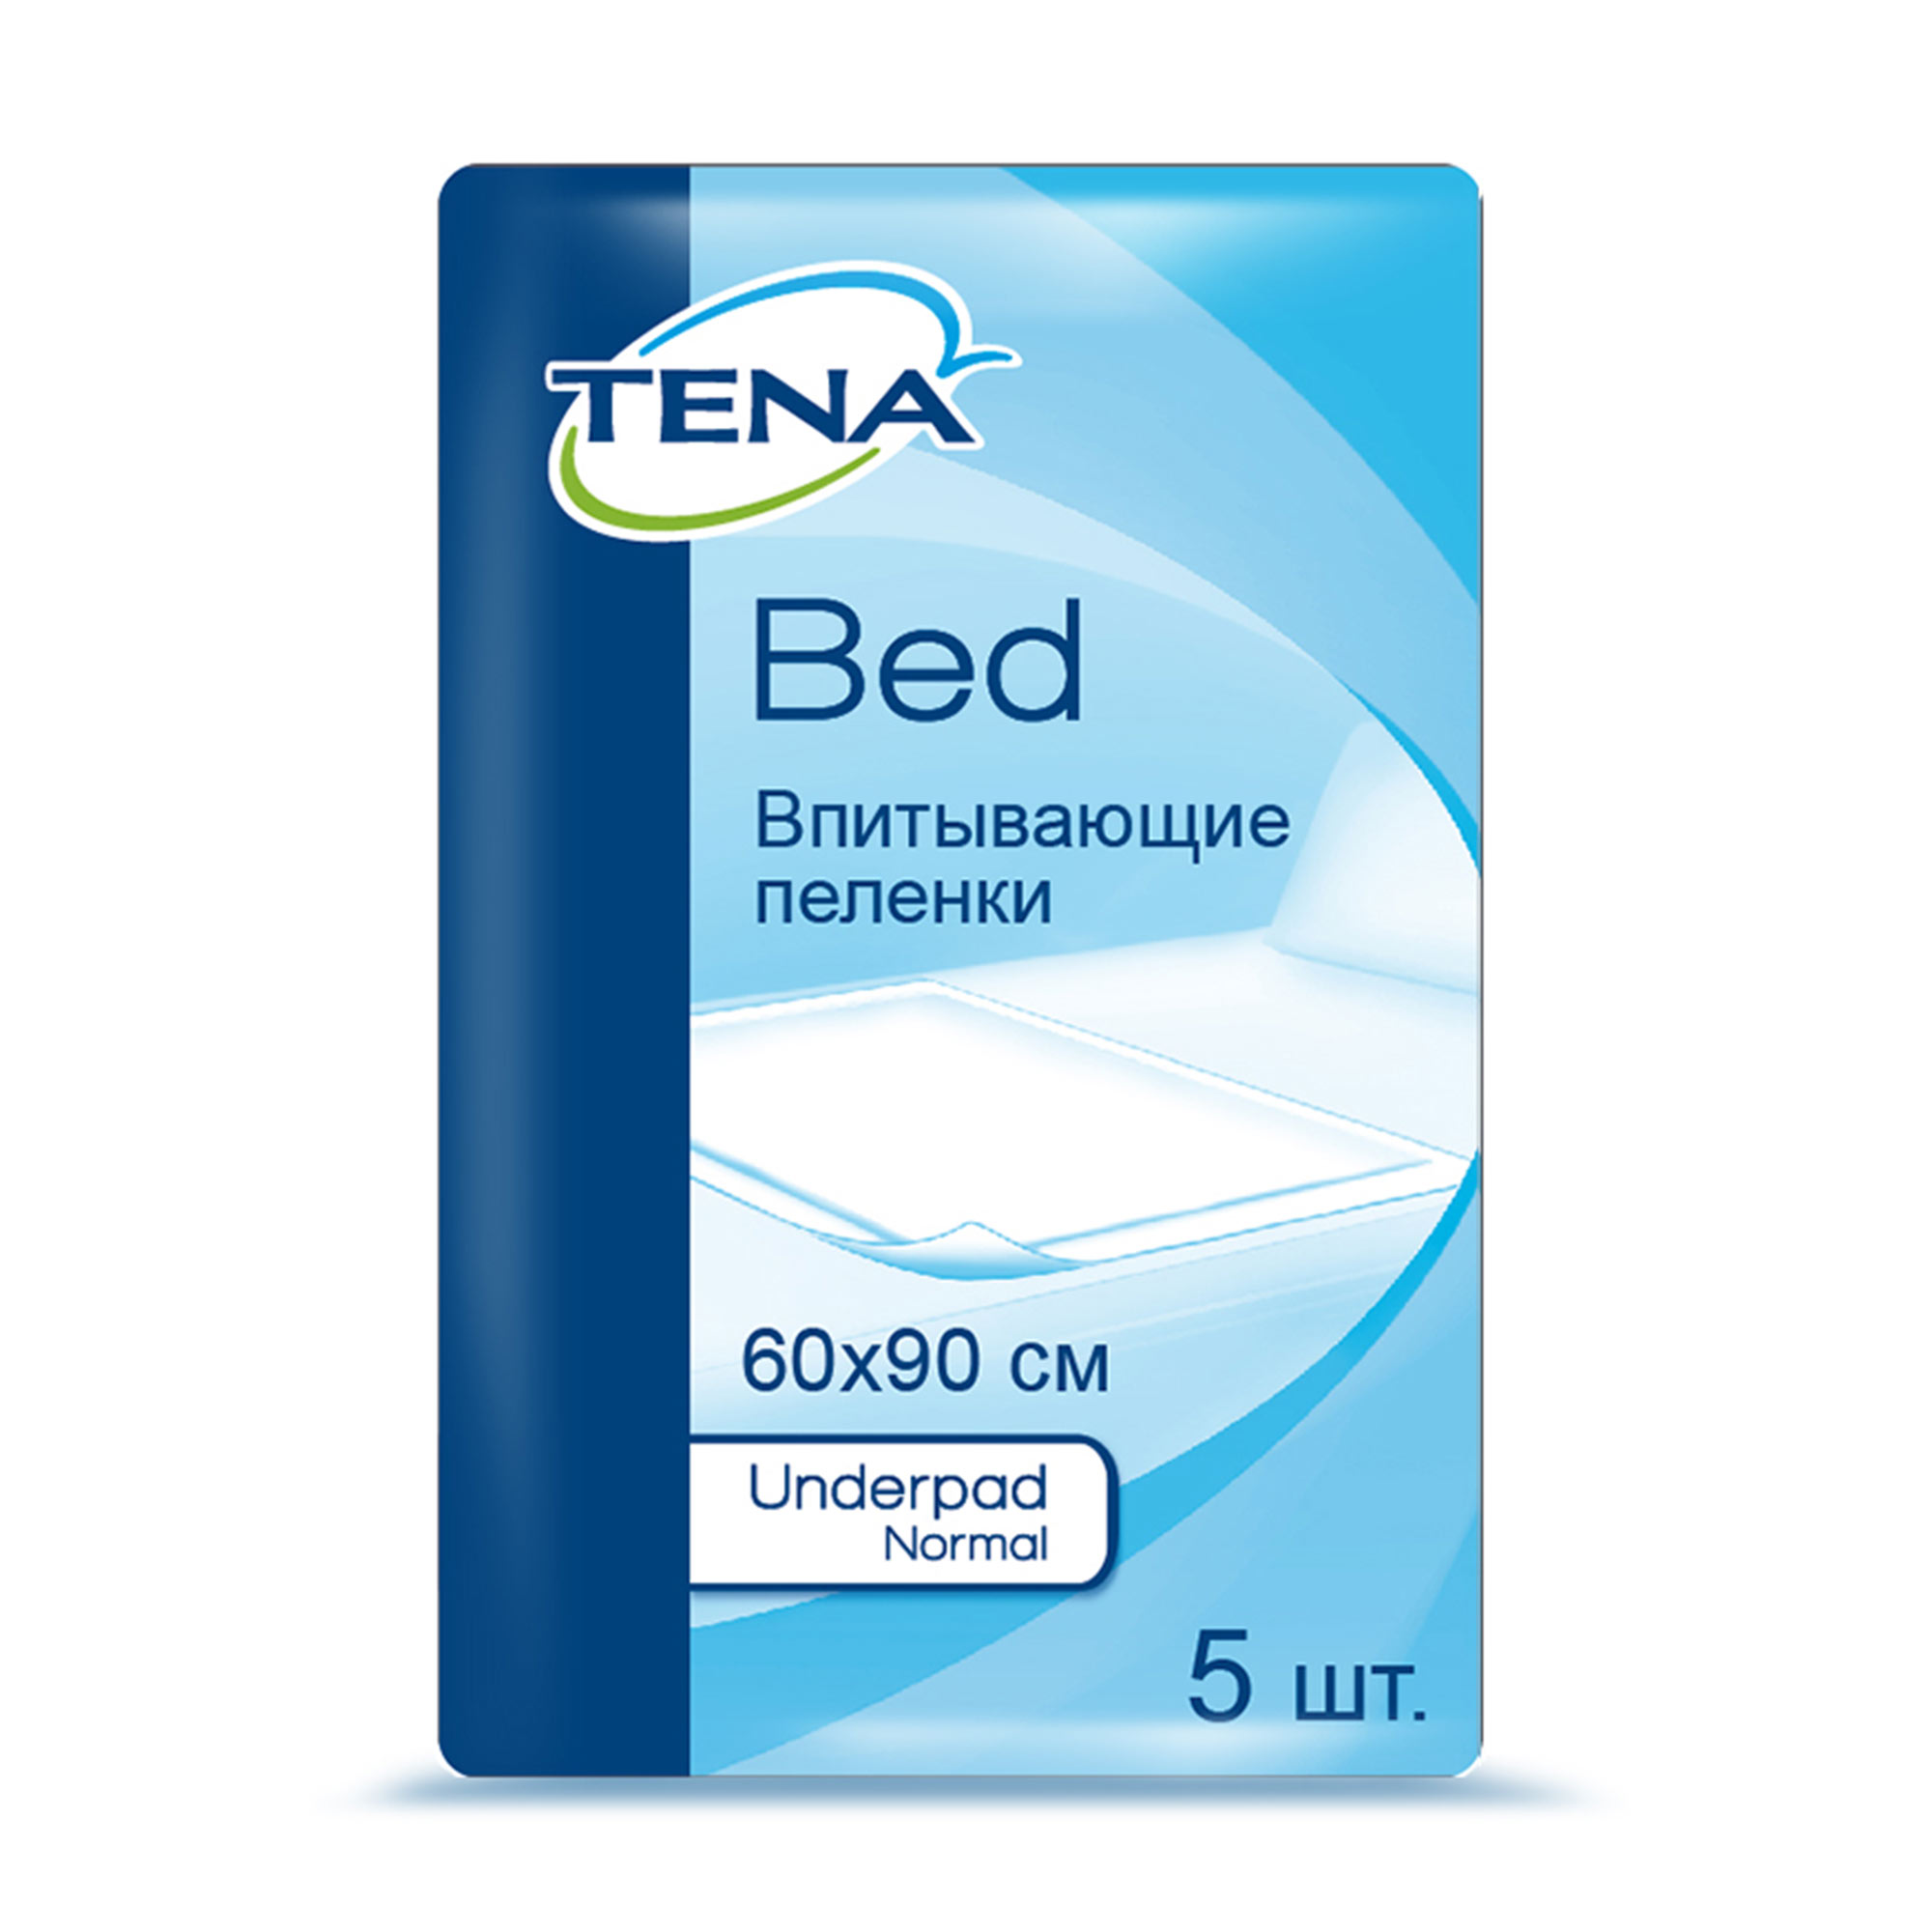 фото Тена бед андерпад нормал (tena bed normal ) 60x90 cm, простыни, 5 шт.